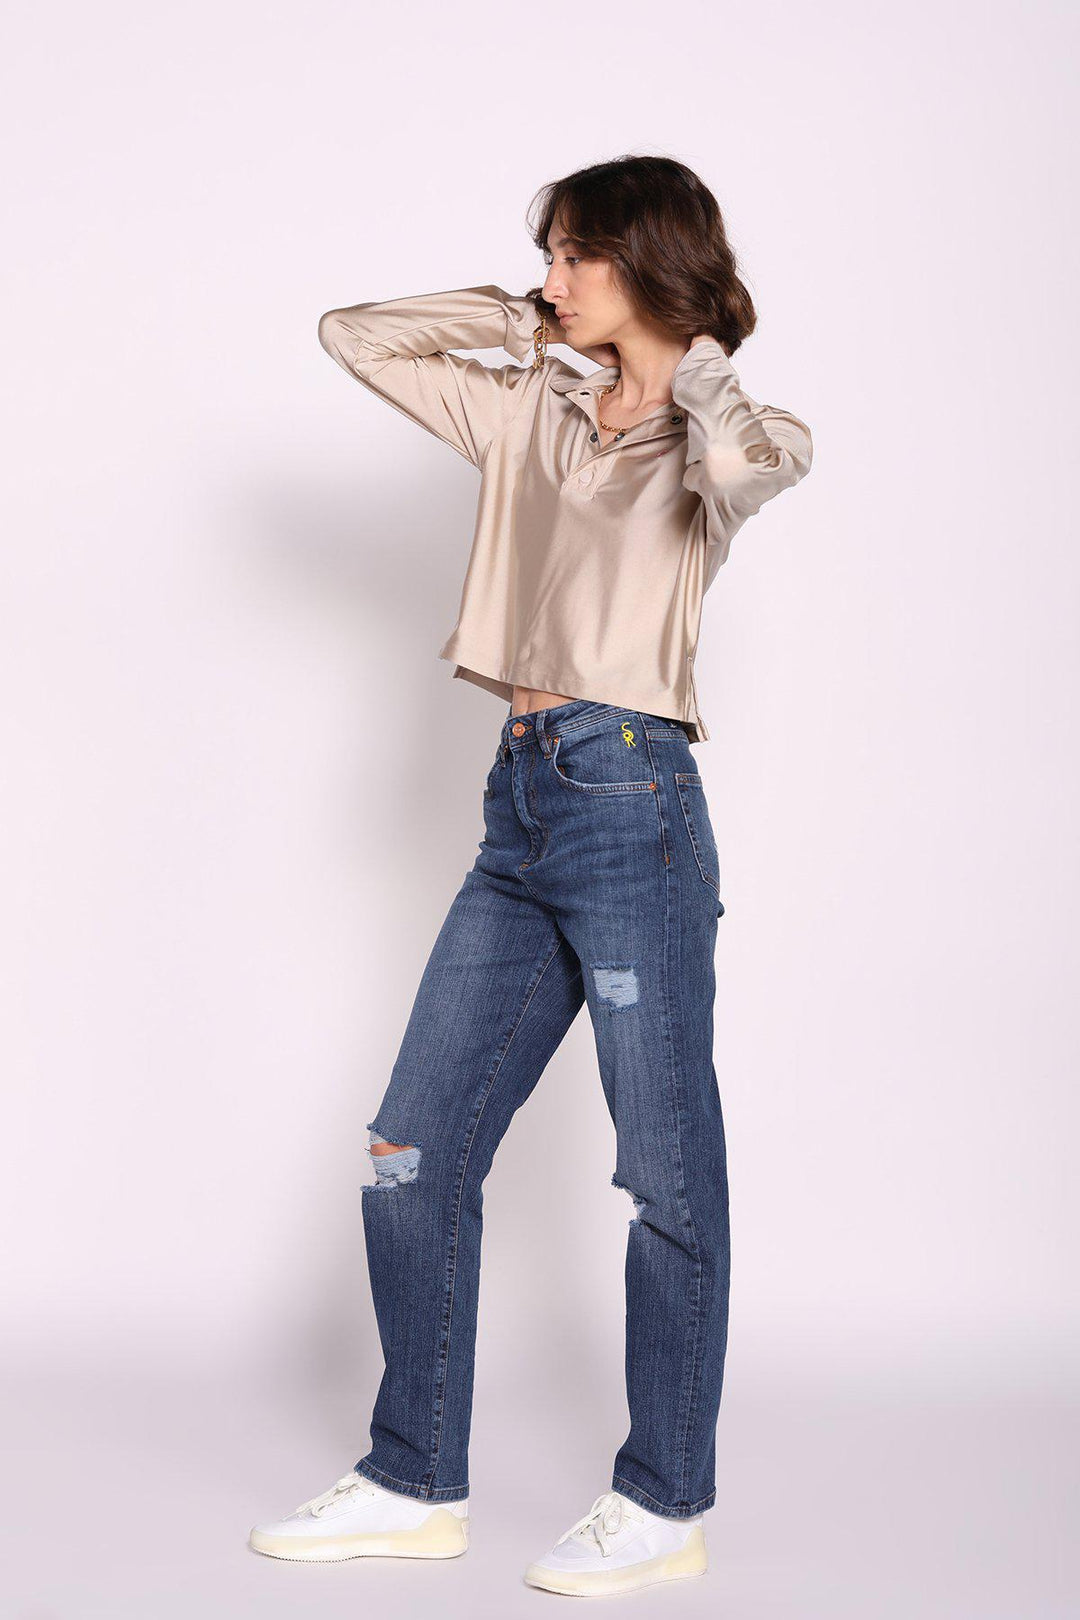 ג׳ינס ארוך ישר עם קרעים בצבע כחול - Razili Studio